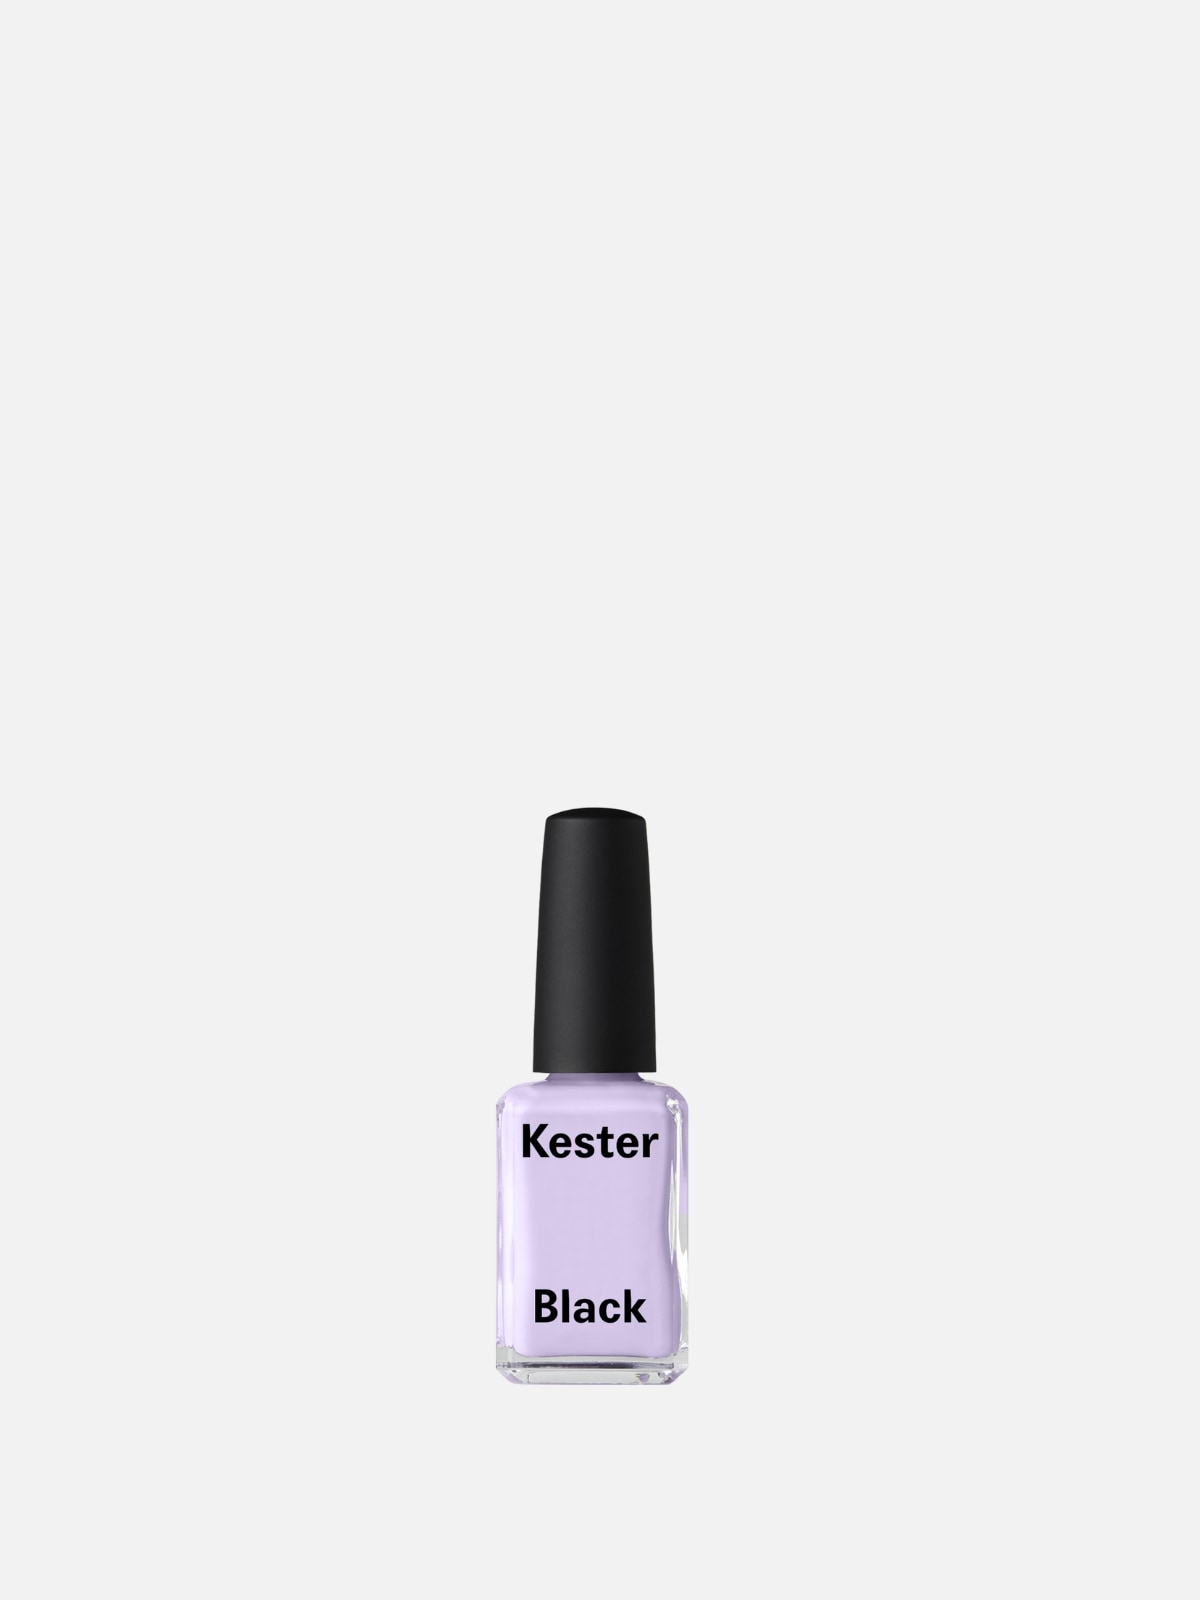 Kester Black - Luna - Smalto color lilla chiaro